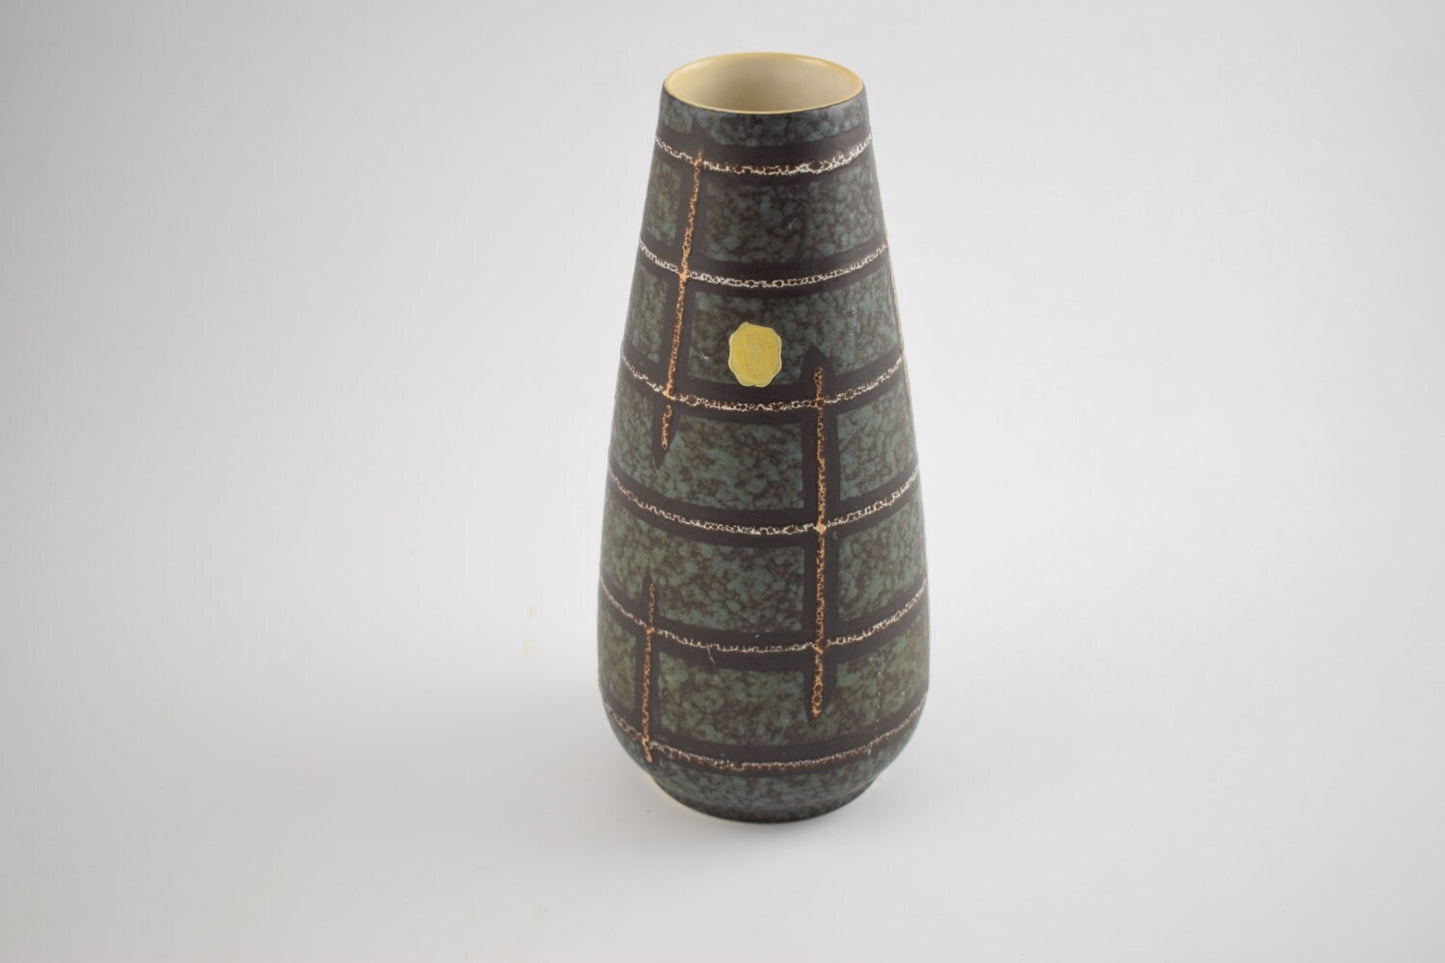 Eckhardt Engler keramik German vase from the 1960s